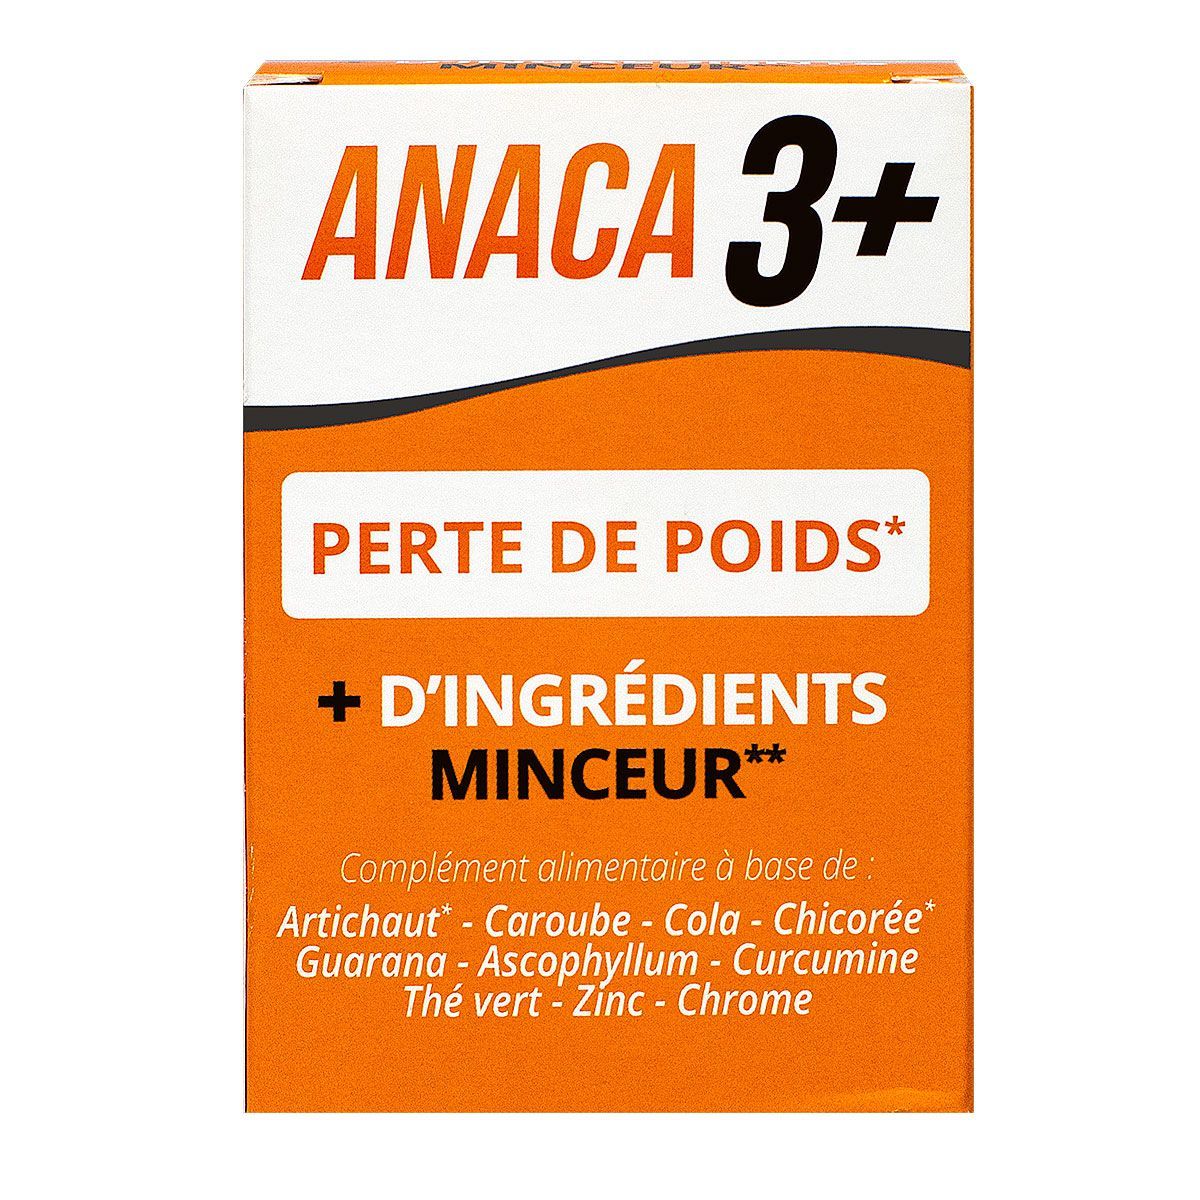 Anaca3+ perte de poids est un complément alimentaire qui contient plus  d'ingrédients minceur.